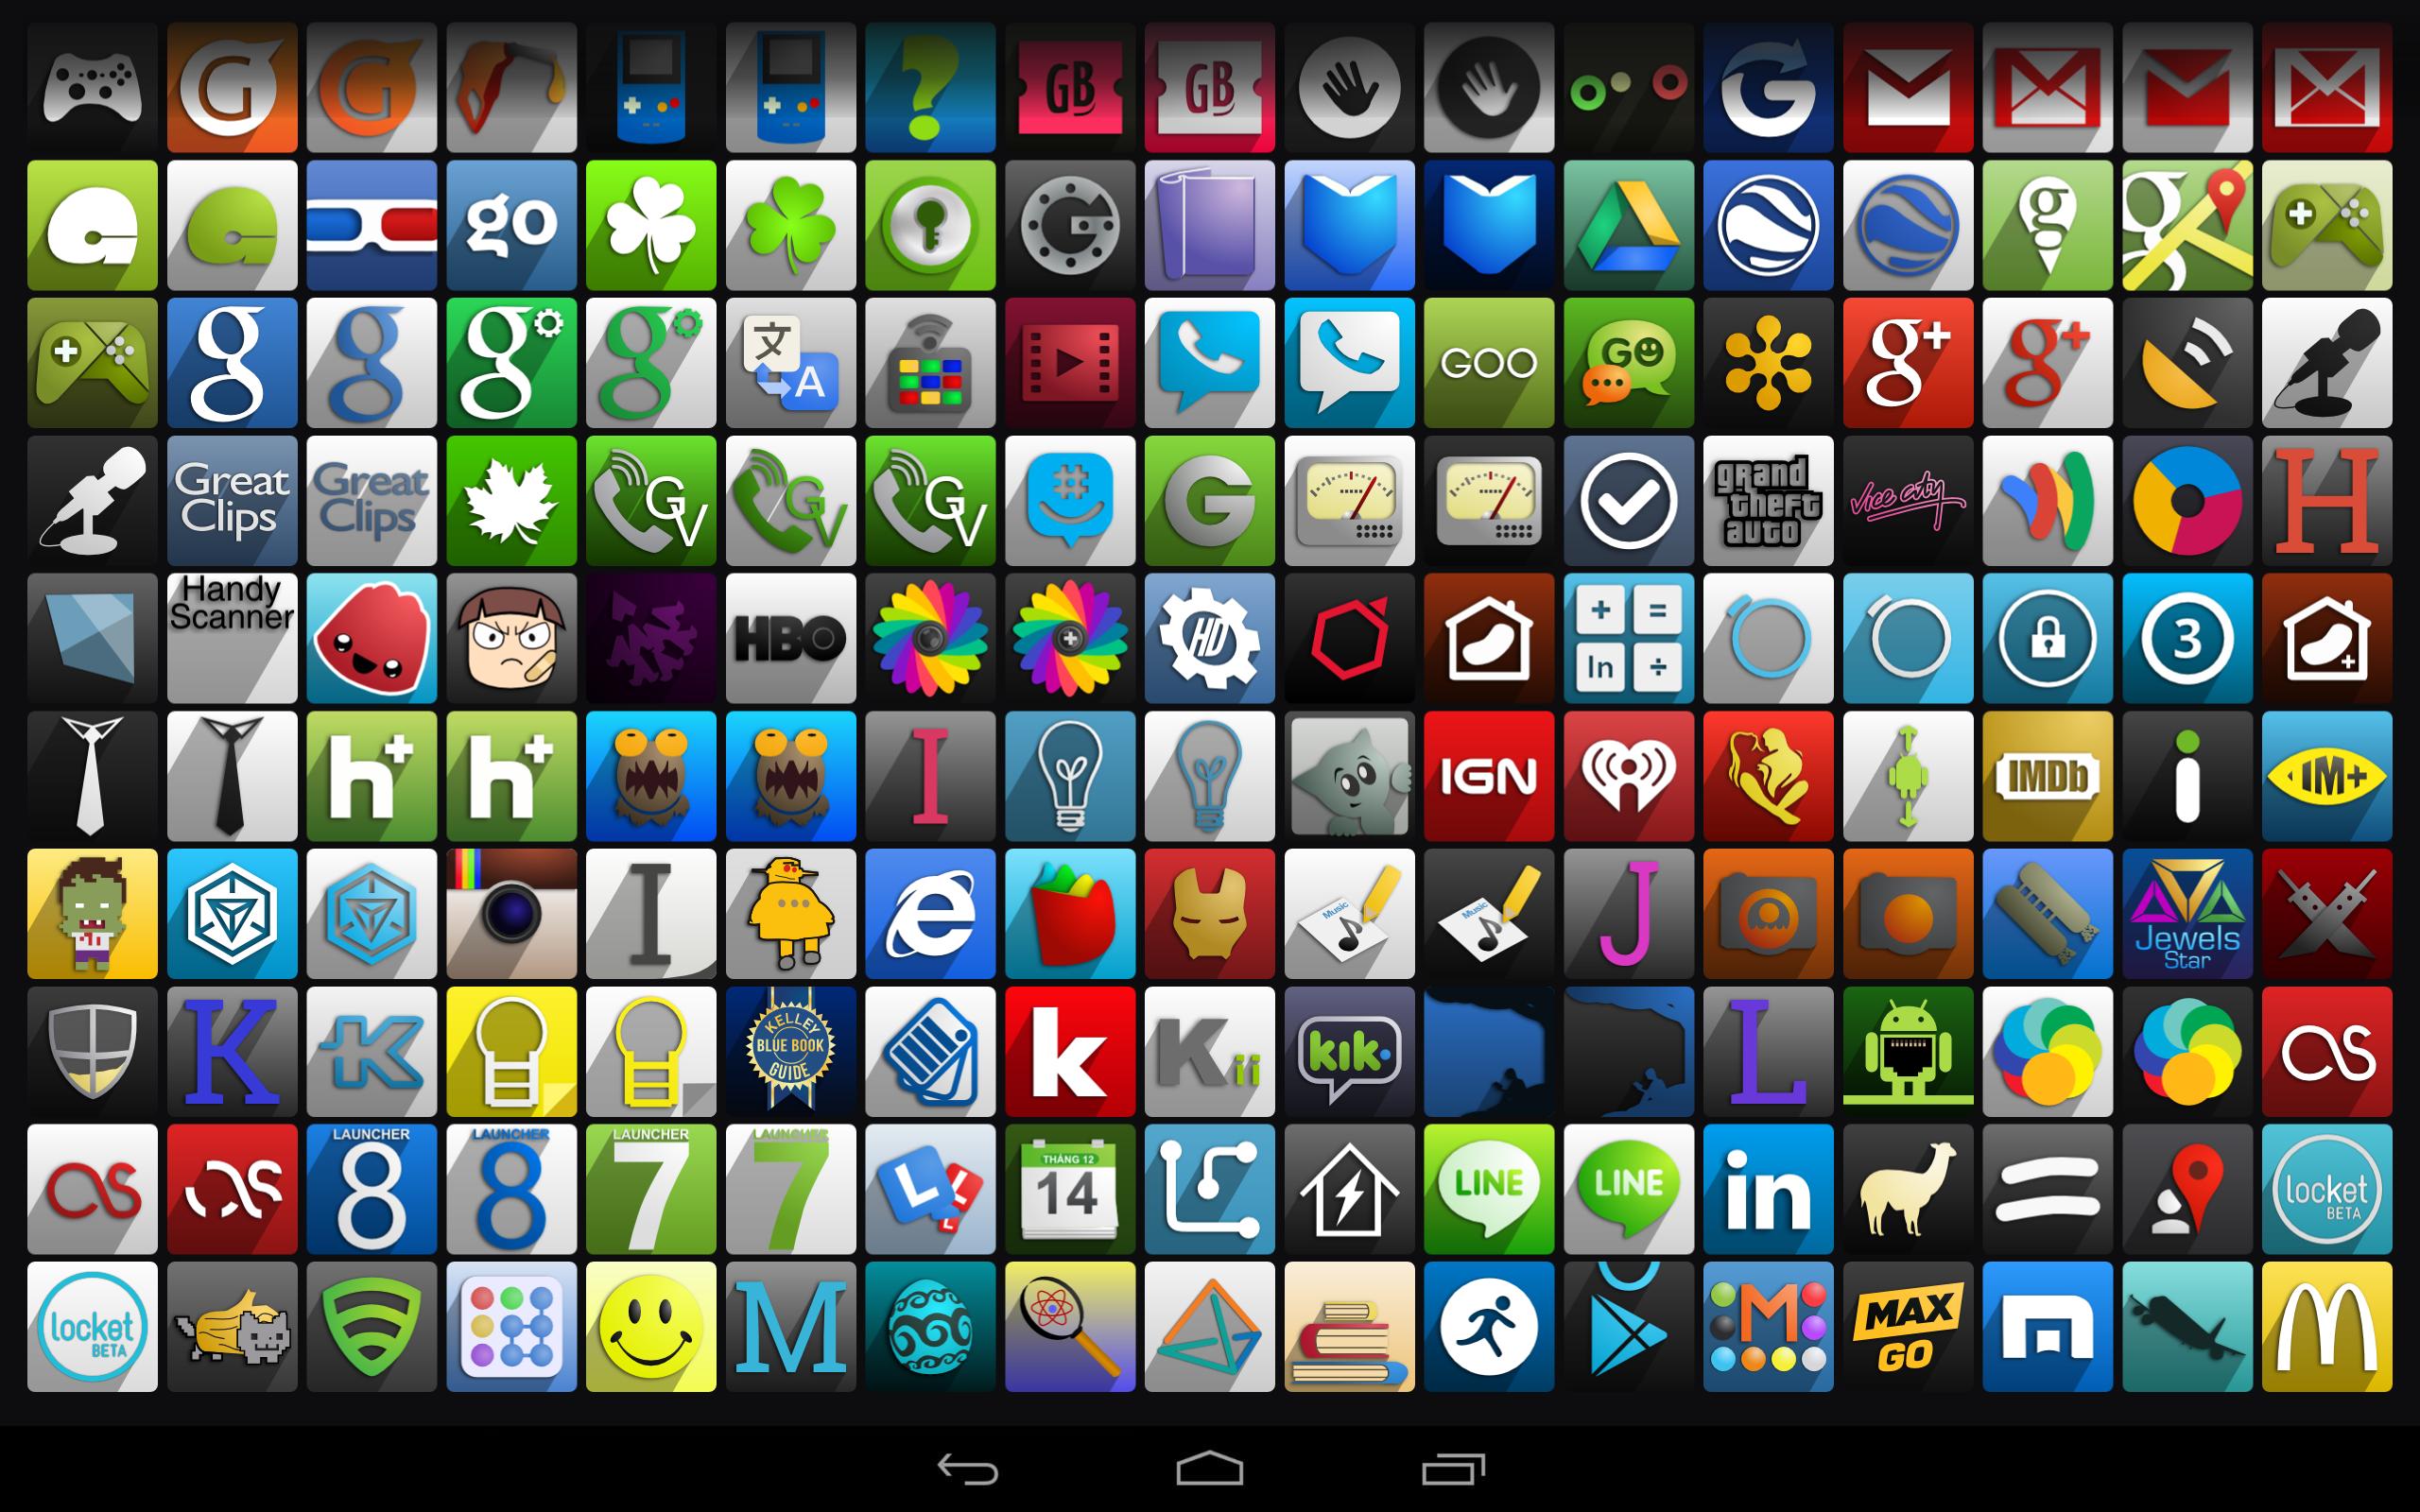 Ярлыки на главном экране андроида. Иконки приложений для андроид. Красивые иконки для приложений. Значки приложений на андроиде. Иконки для приложений Android.